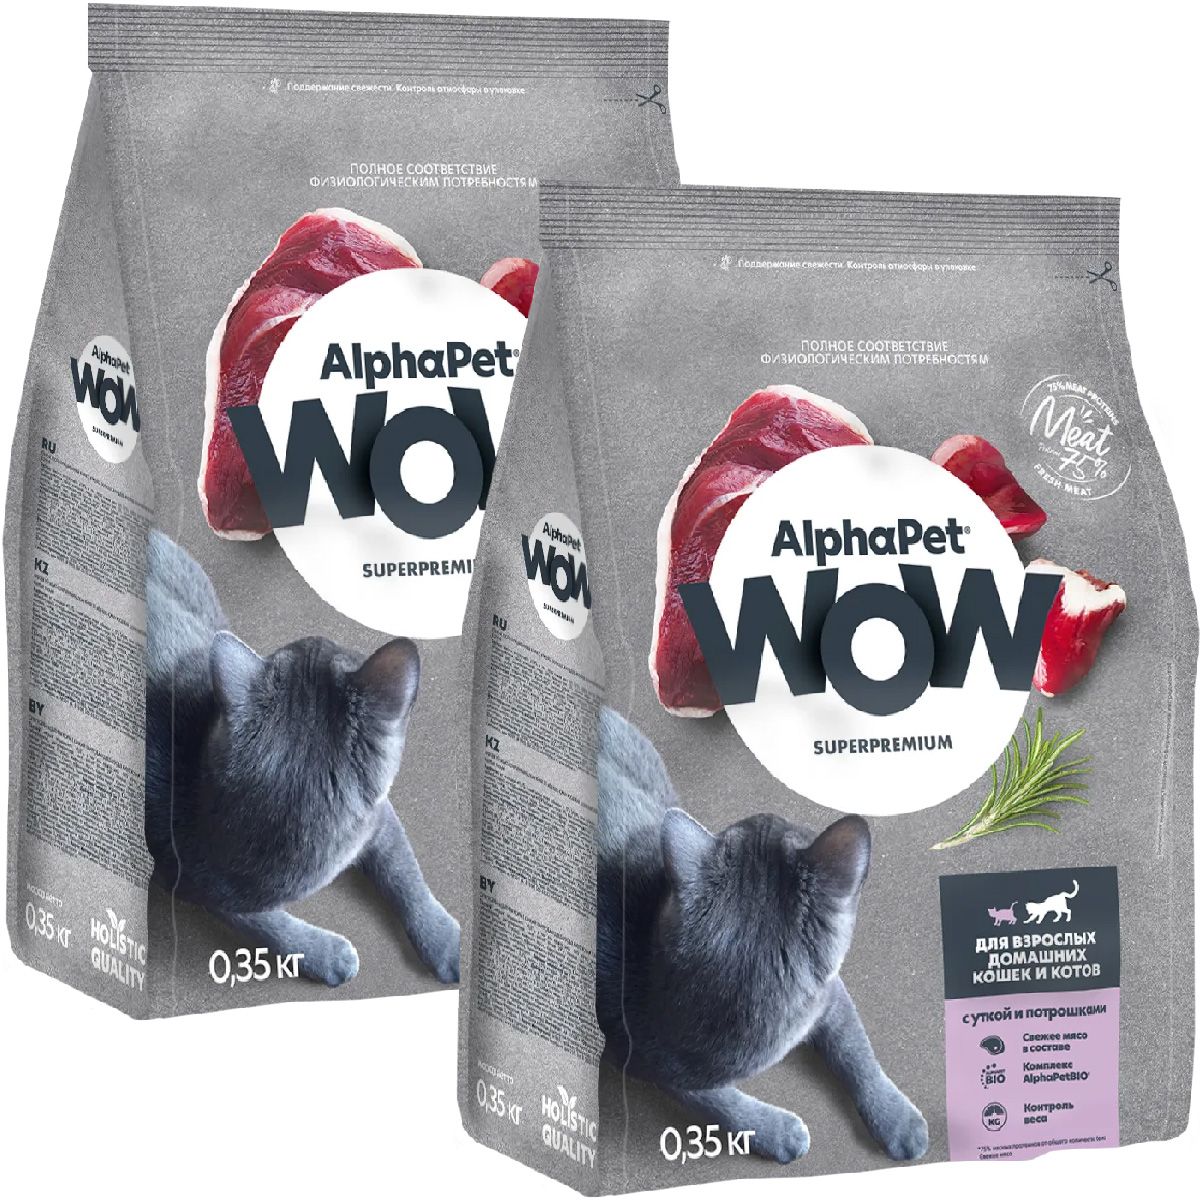 Купить корм для кошки wow. Alphapet wow 0,35кг утка потрошки сухой для взрослых кошек.